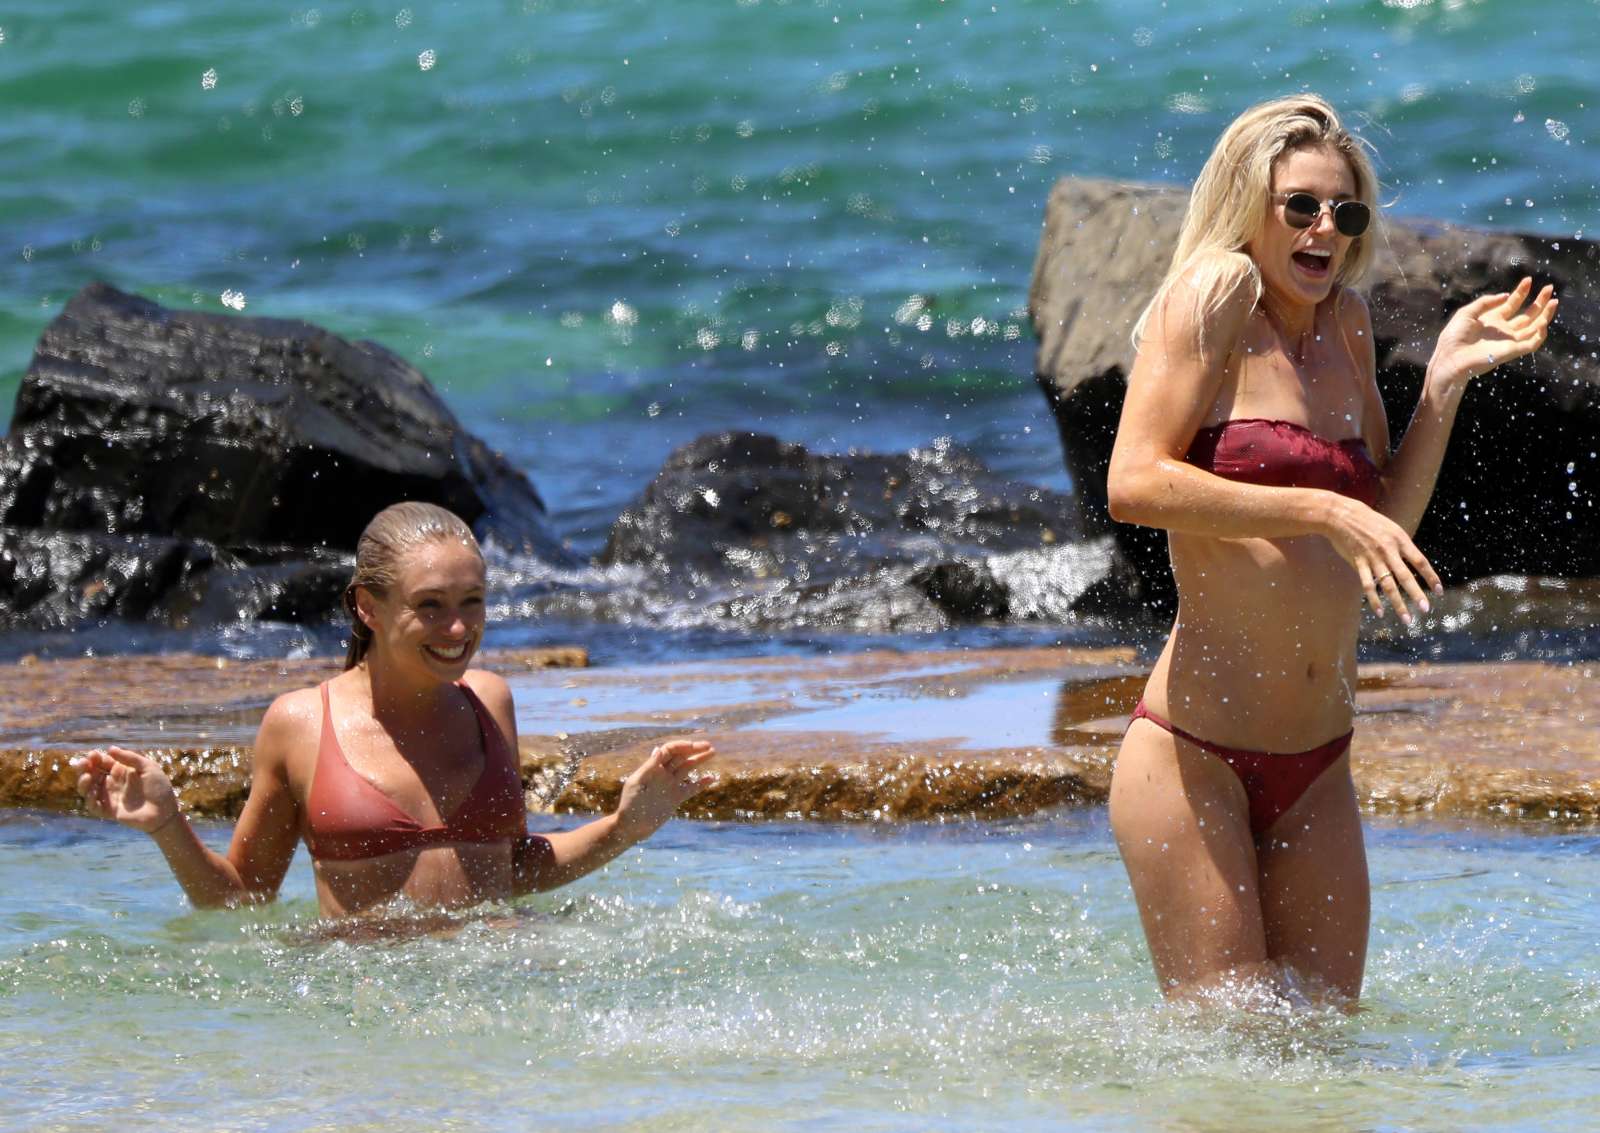 Amy Pejkovic in Bikini at Balmoral Beach in Sydney. 